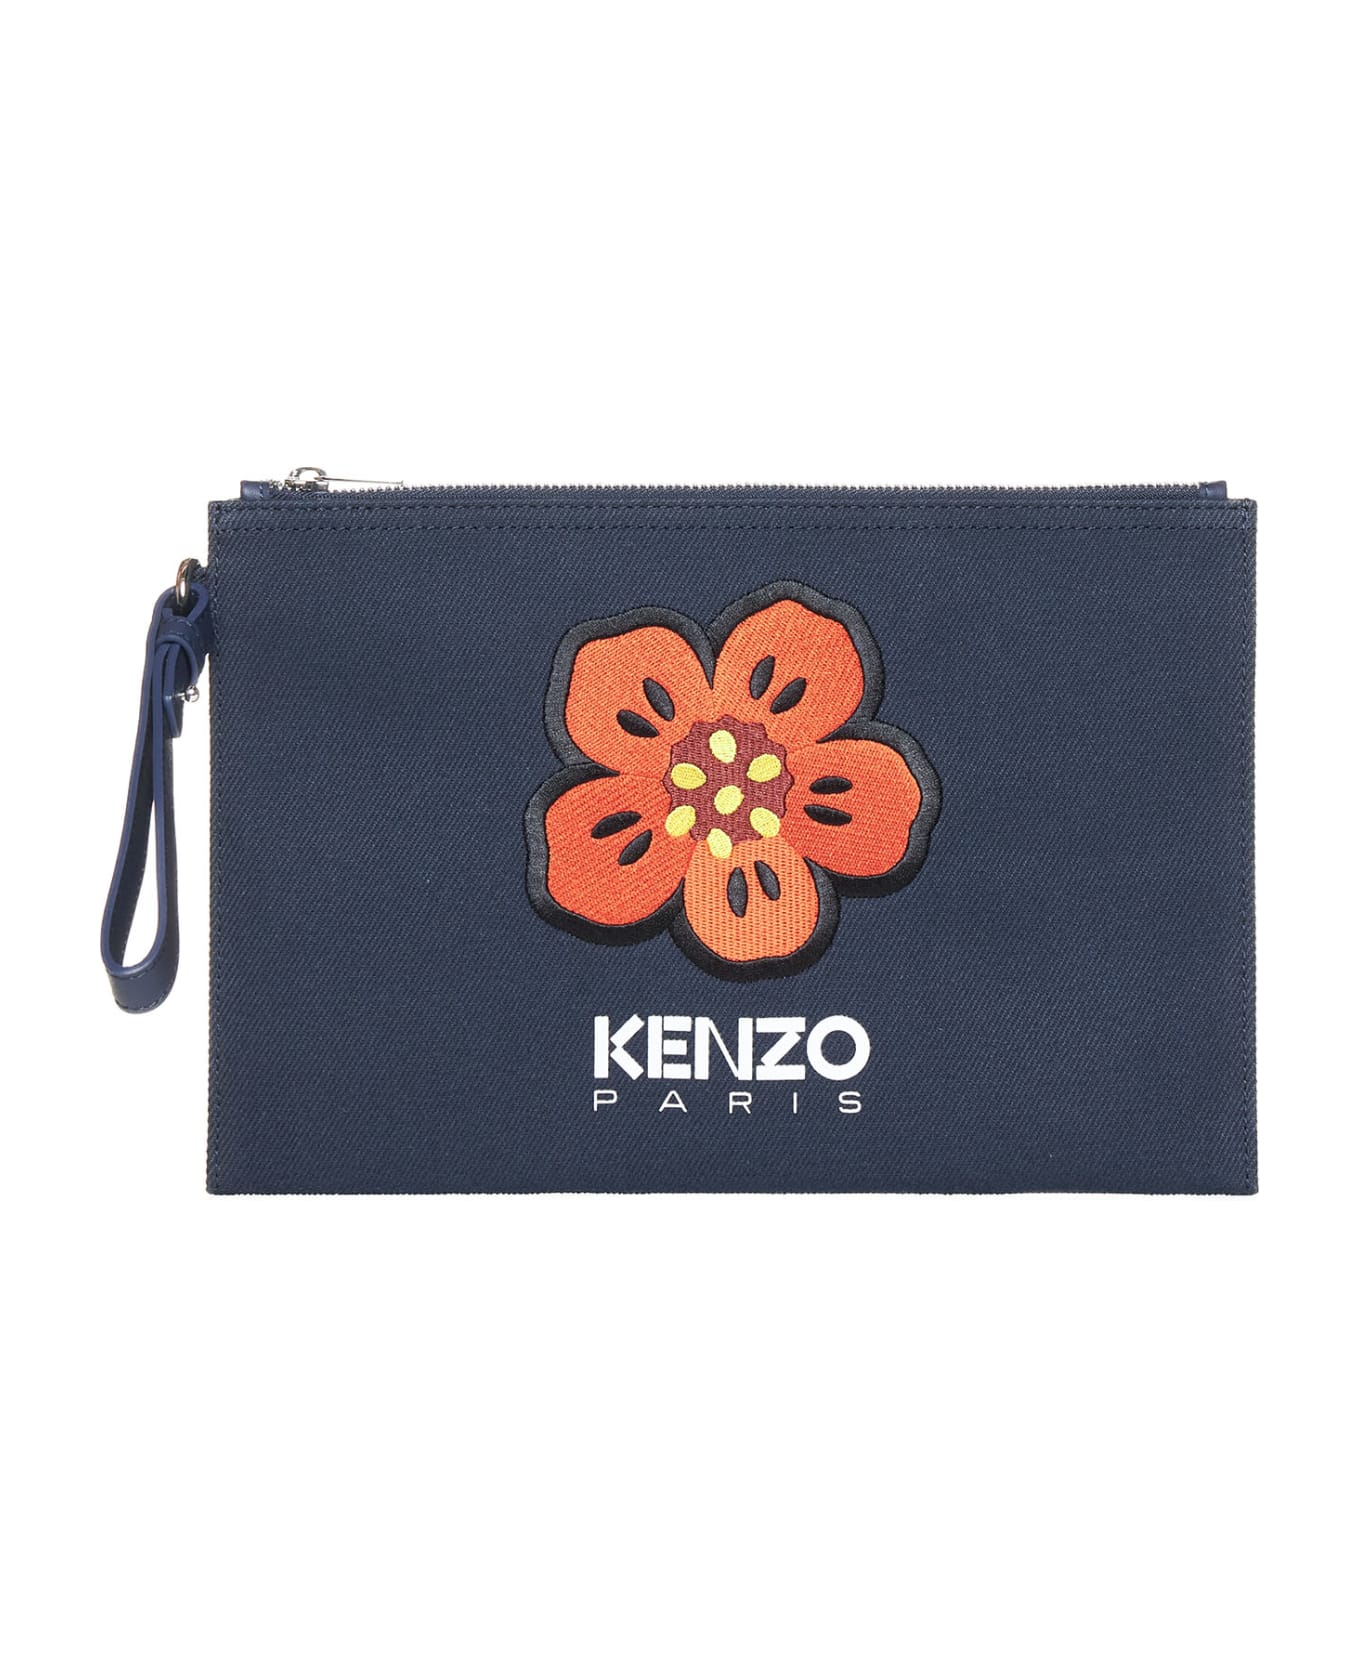 Kenzo 'boke Flower' Clutch - Navy blue